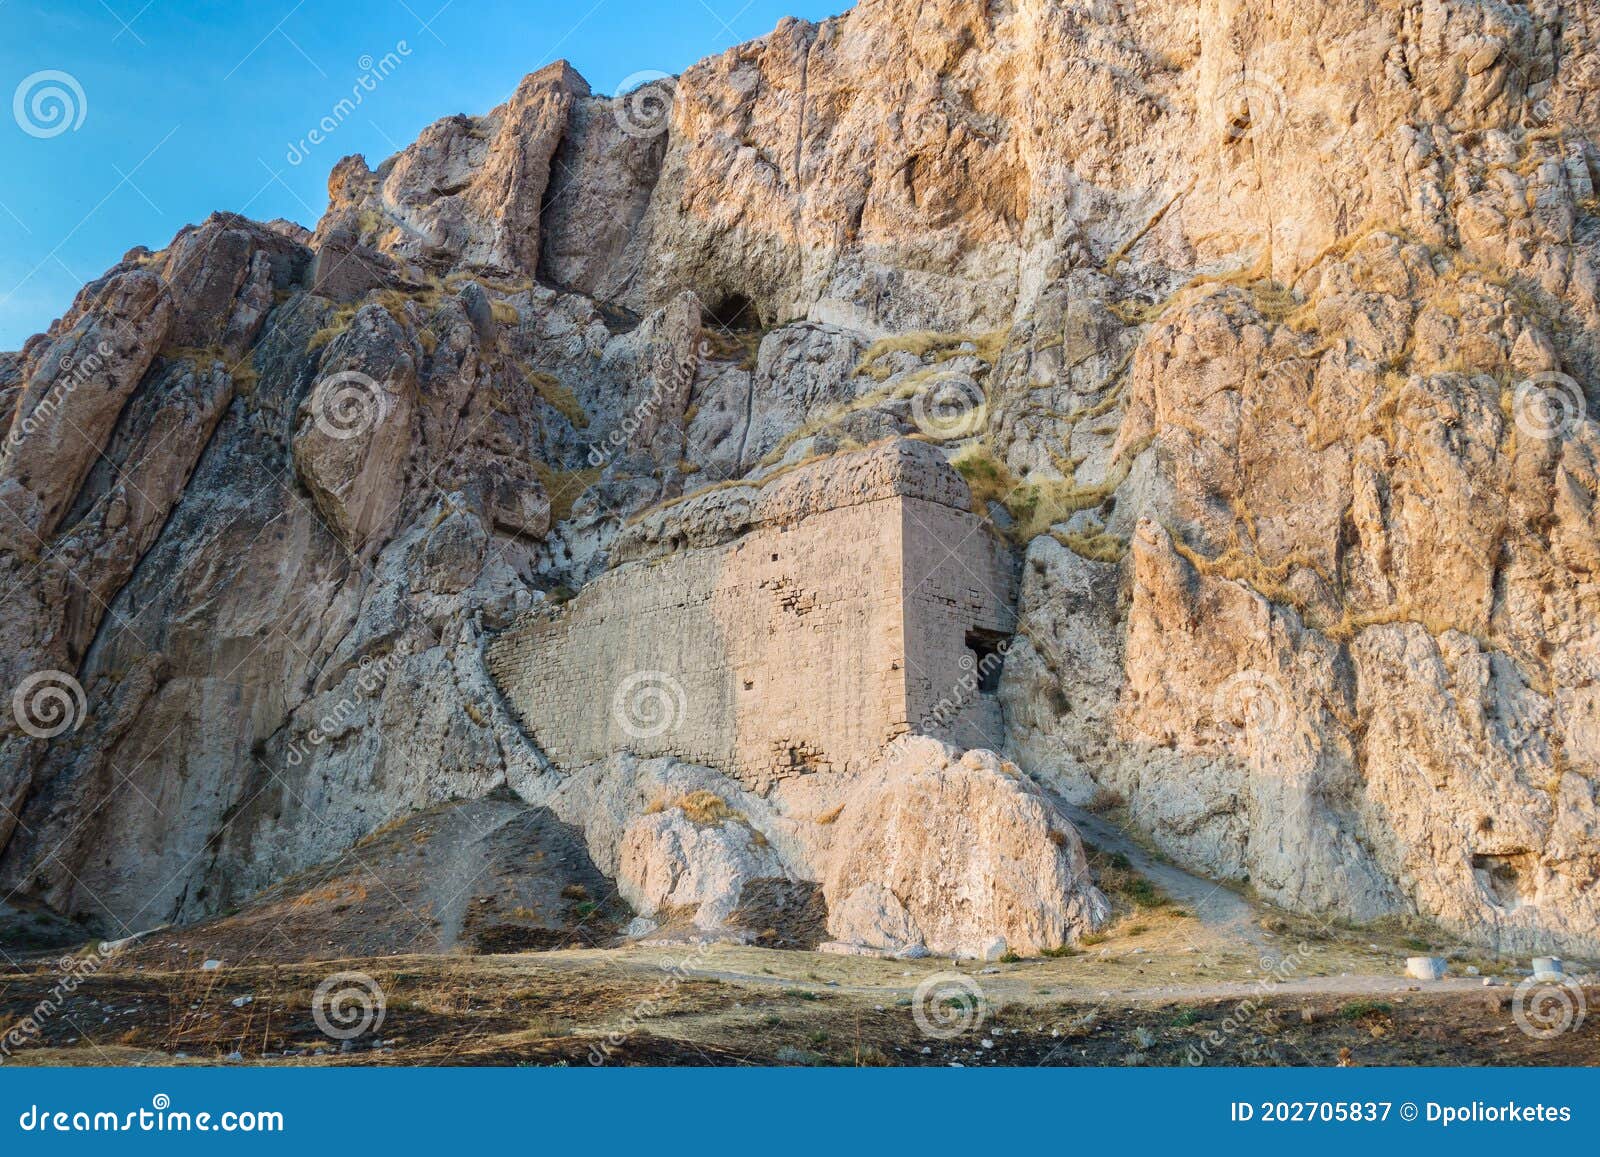 酒店位于古城凡土尔其一栋建筑的遗骸上 俯瞰古梵岩 其著名的tushpa堡垒库存图片 图片包括有岩石 没人 202705837